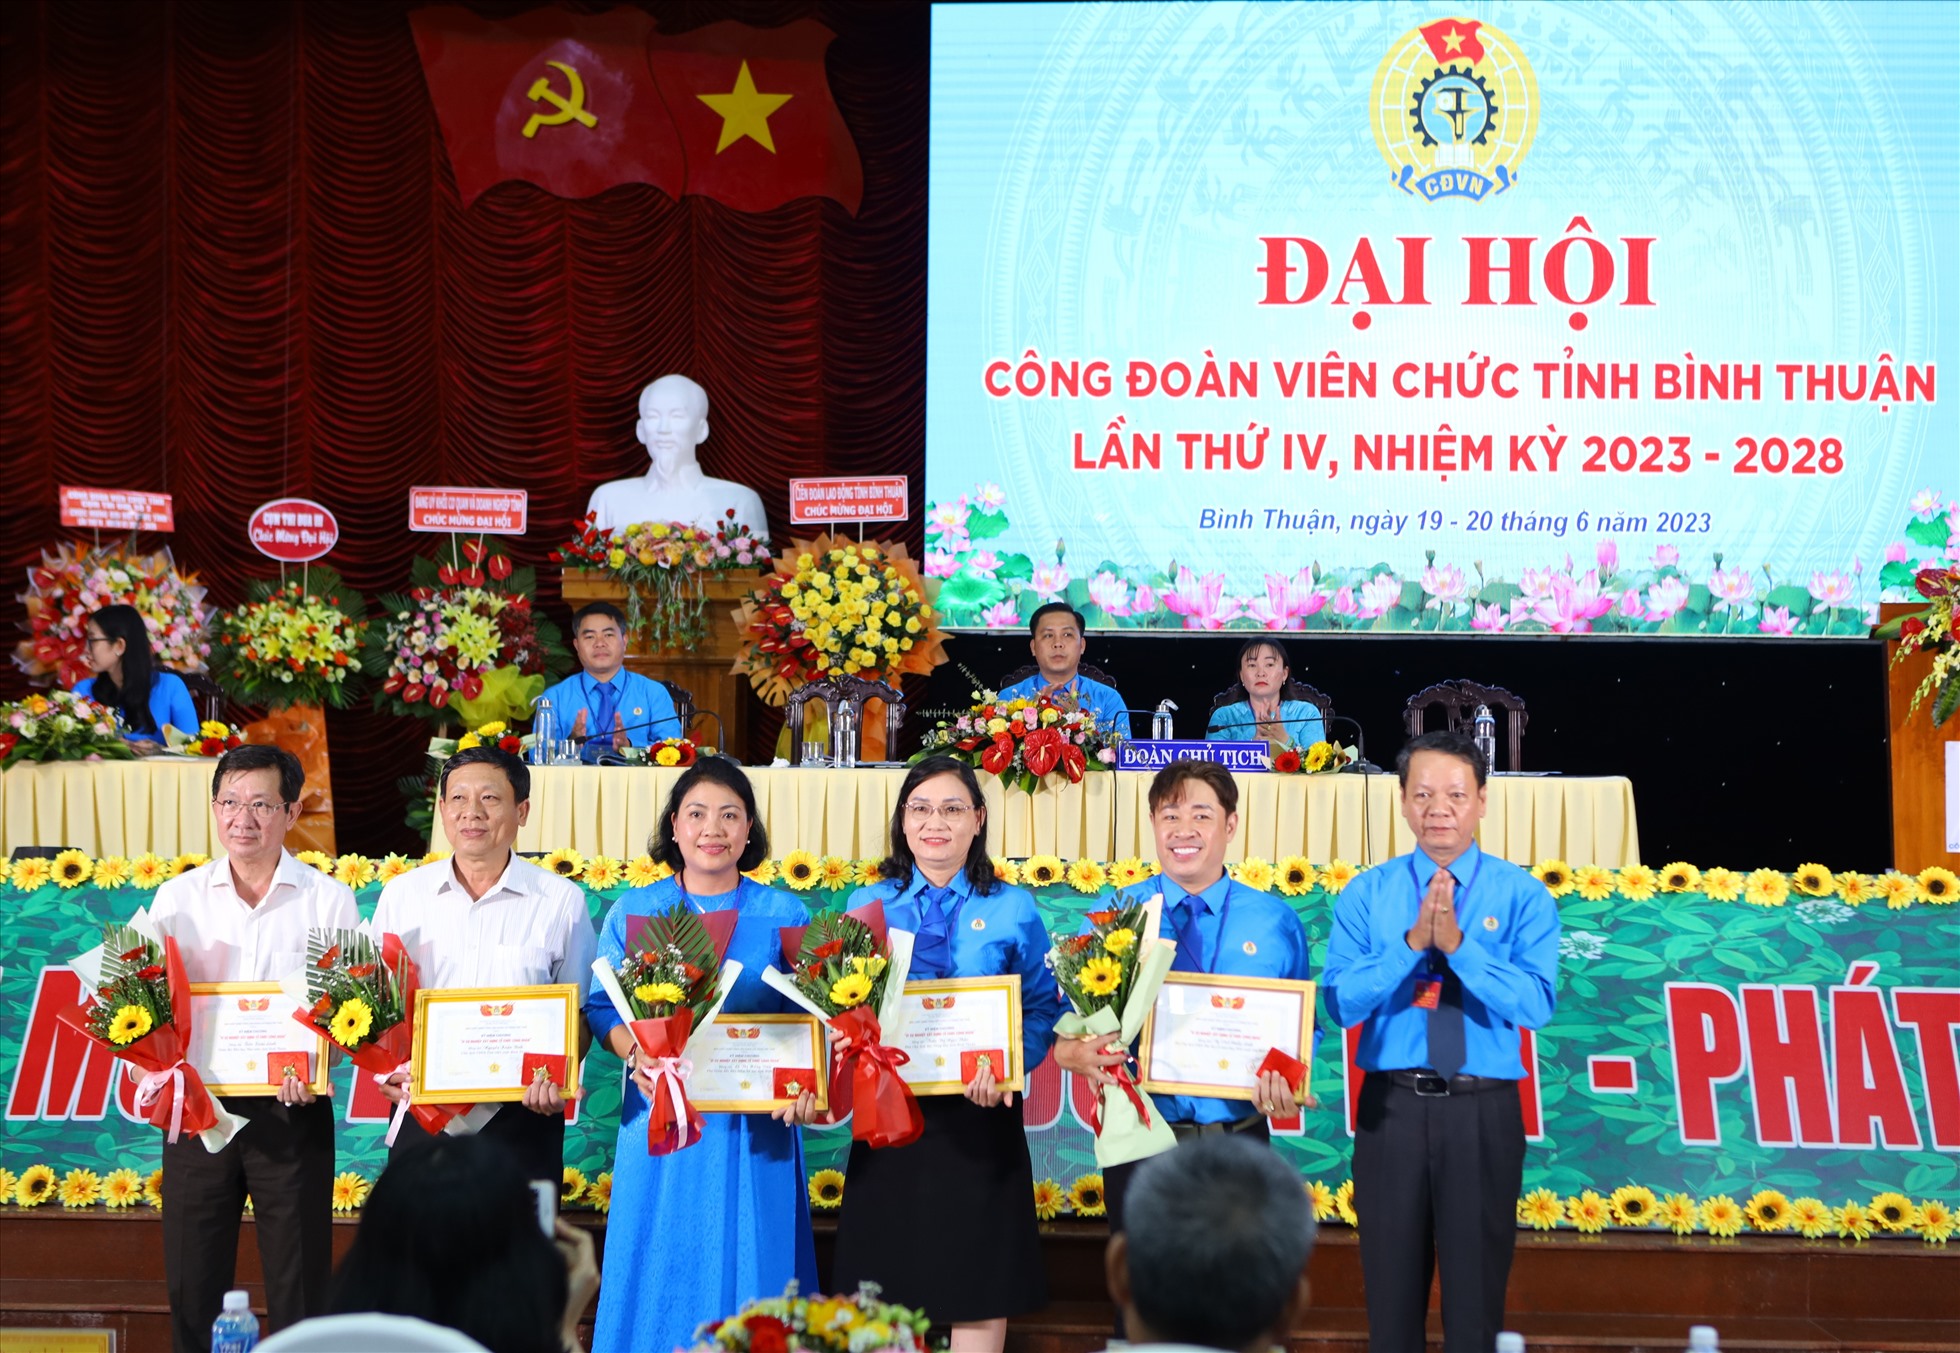 Trao tặng kỉ niệm chương “Vì sự nghiệp xây dựng tổ chức công đoàn” của Tổng Liên đoàn Lao động Việt Nam cho 6 cá nhân. Ảnh: Duy Tuấn